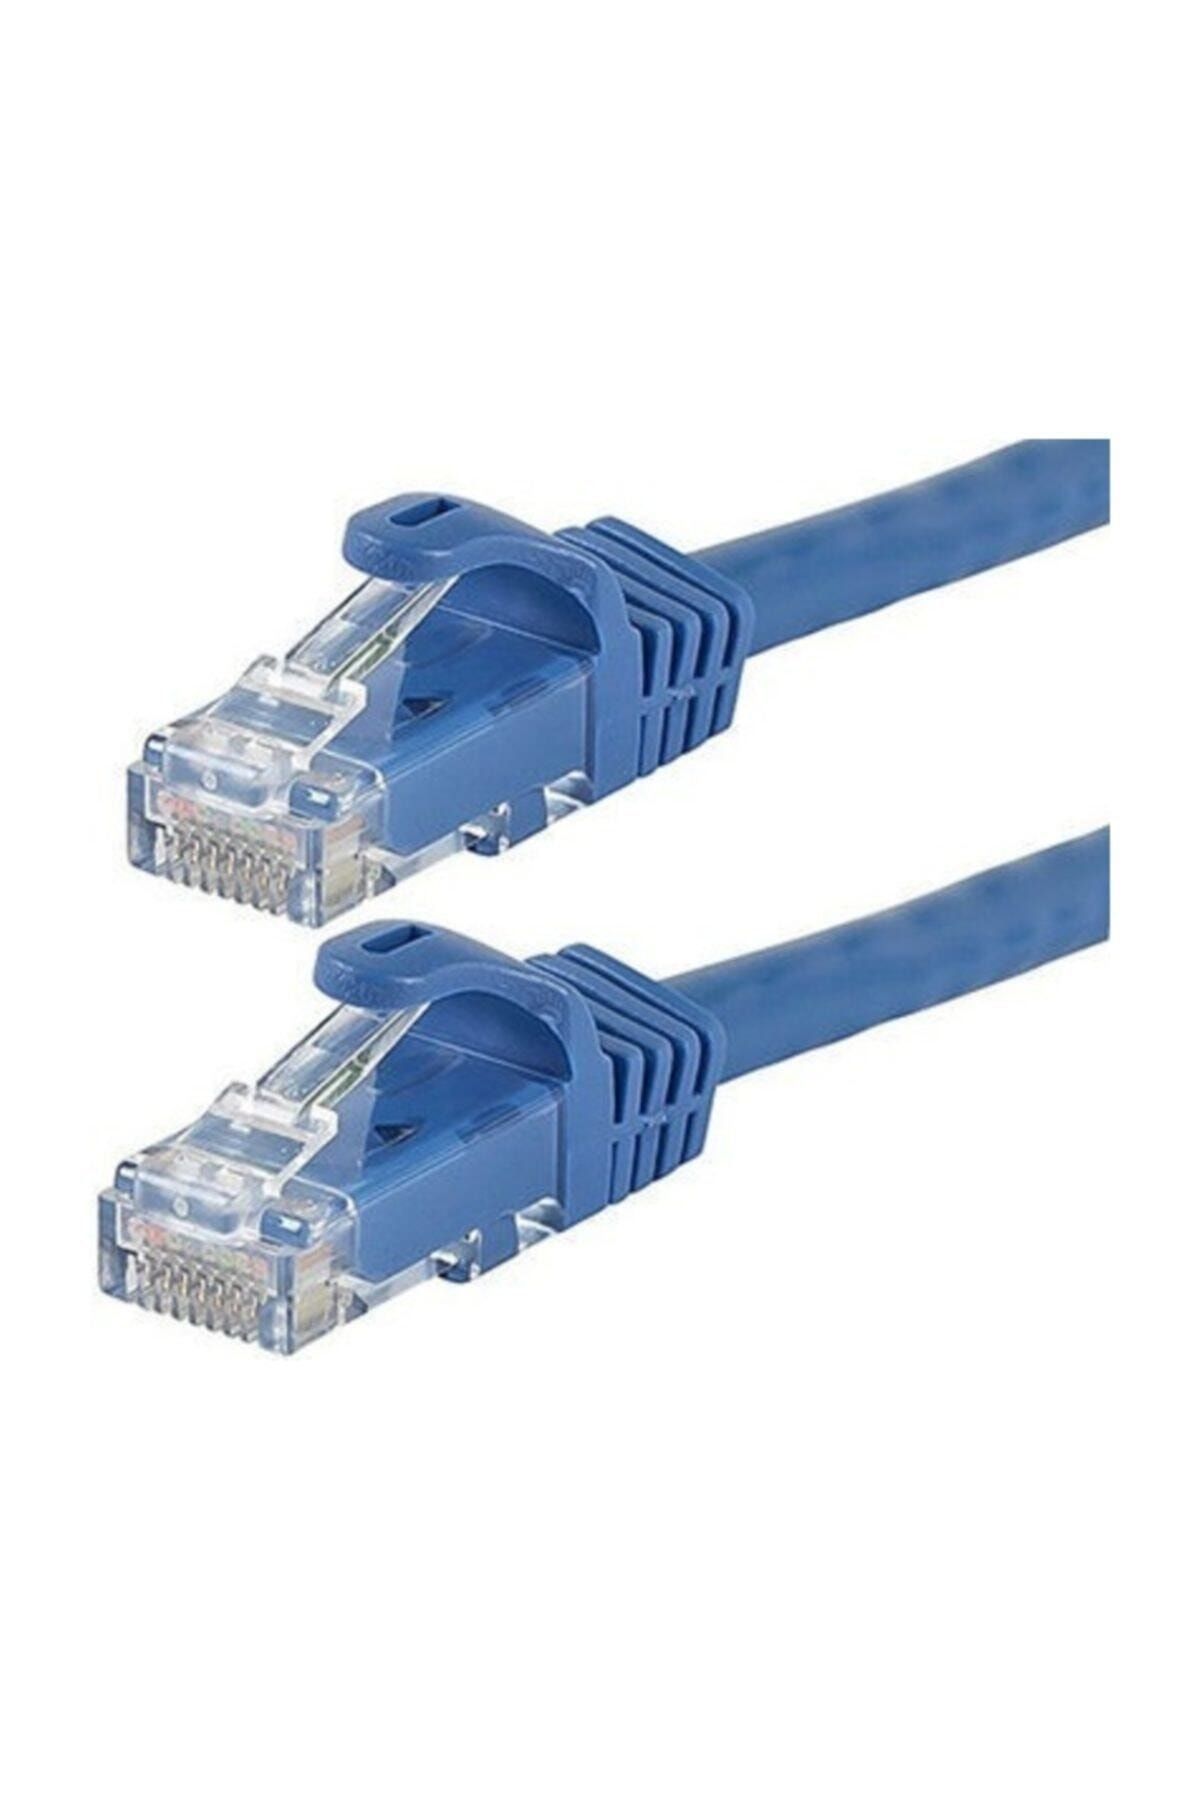 Alfais 4216 Cat6 Internet Ethernet Rj45 Lan Kablosu 5 mt.